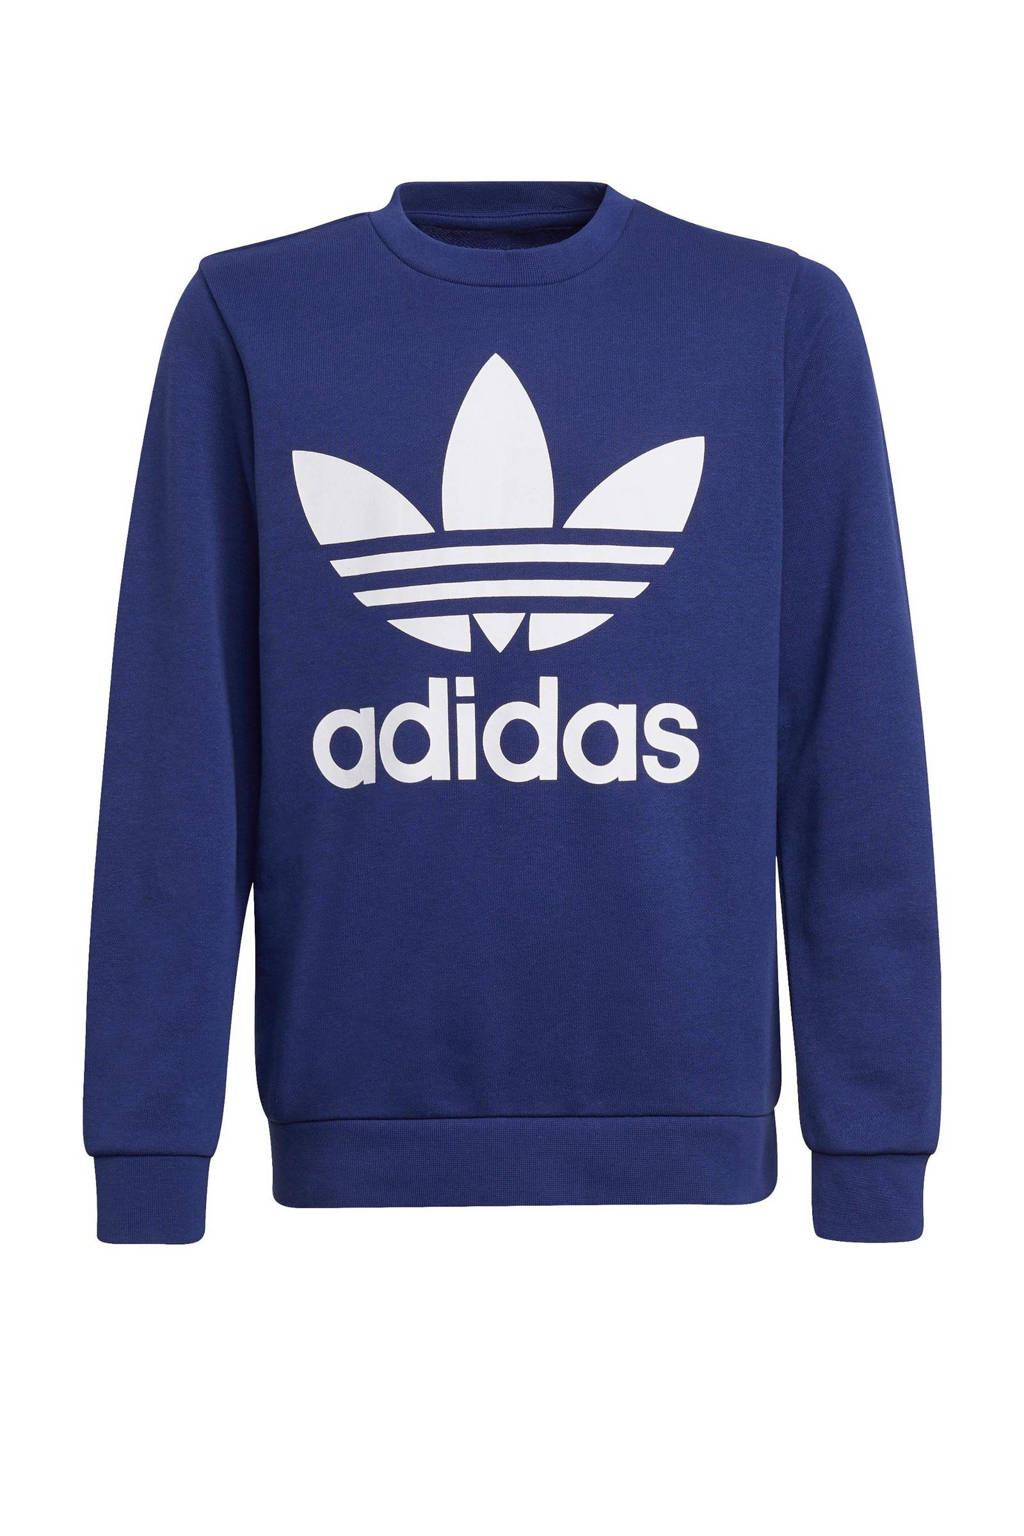 adidas Originals Adicolor sweater donkerblauw/wit